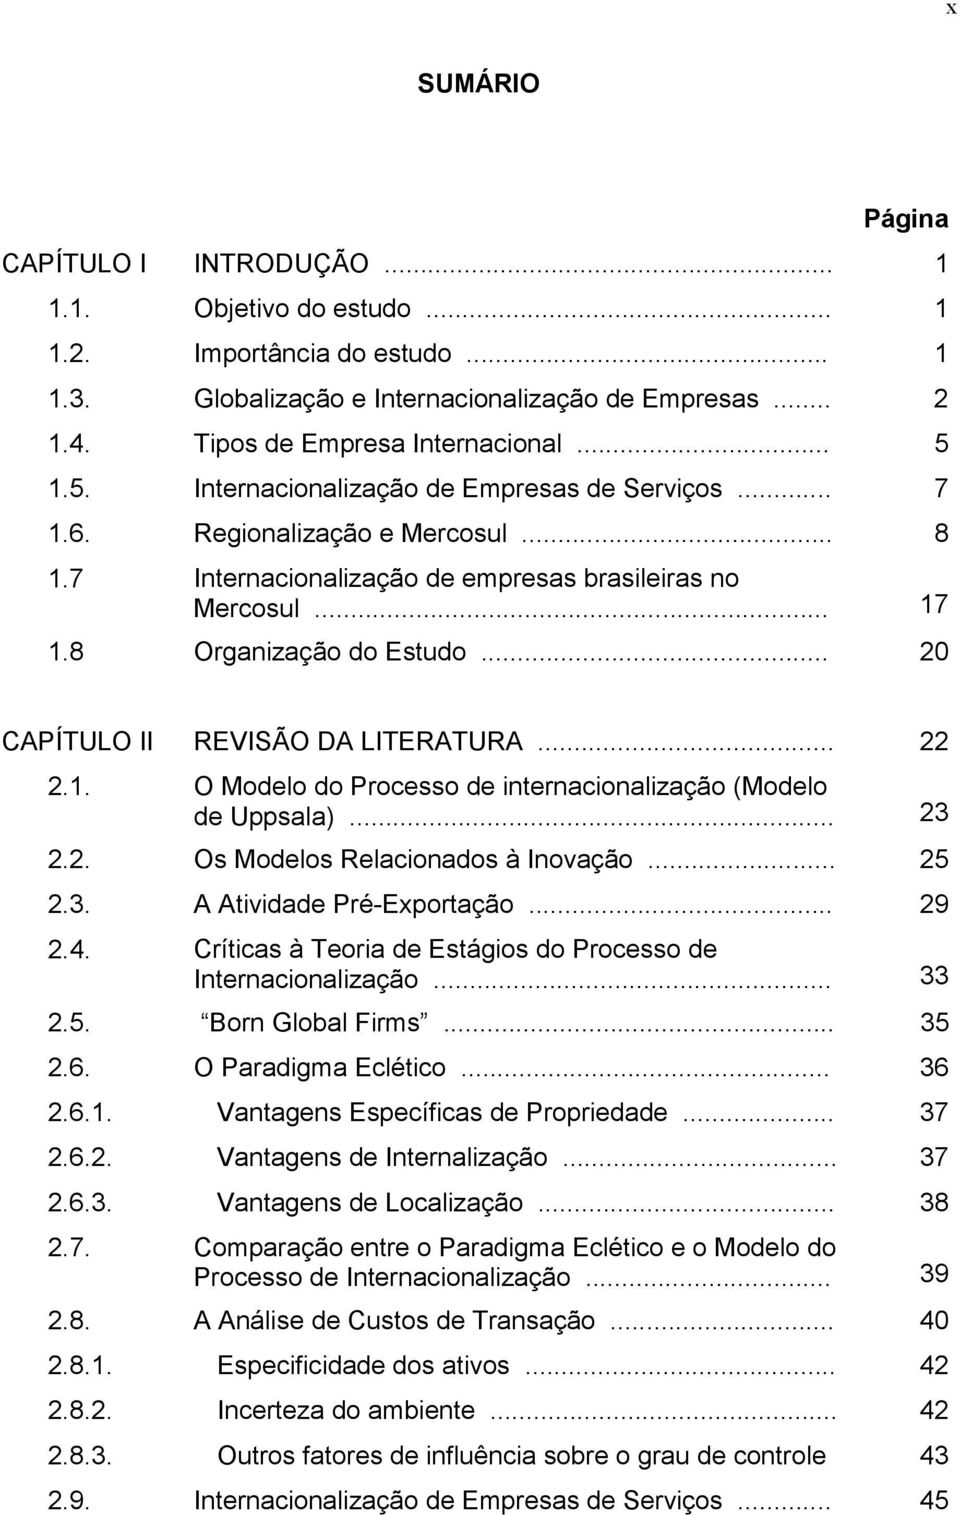 .. 20 CAPÍTULO II REVISÃO DA LITERATURA... 22 2.1. O Modelo do Processo de internacionalização (Modelo de Uppsala)... 23 2.2. Os Modelos Relacionados à Inovação... 25 2.3. A Atividade Pré-Exportação.